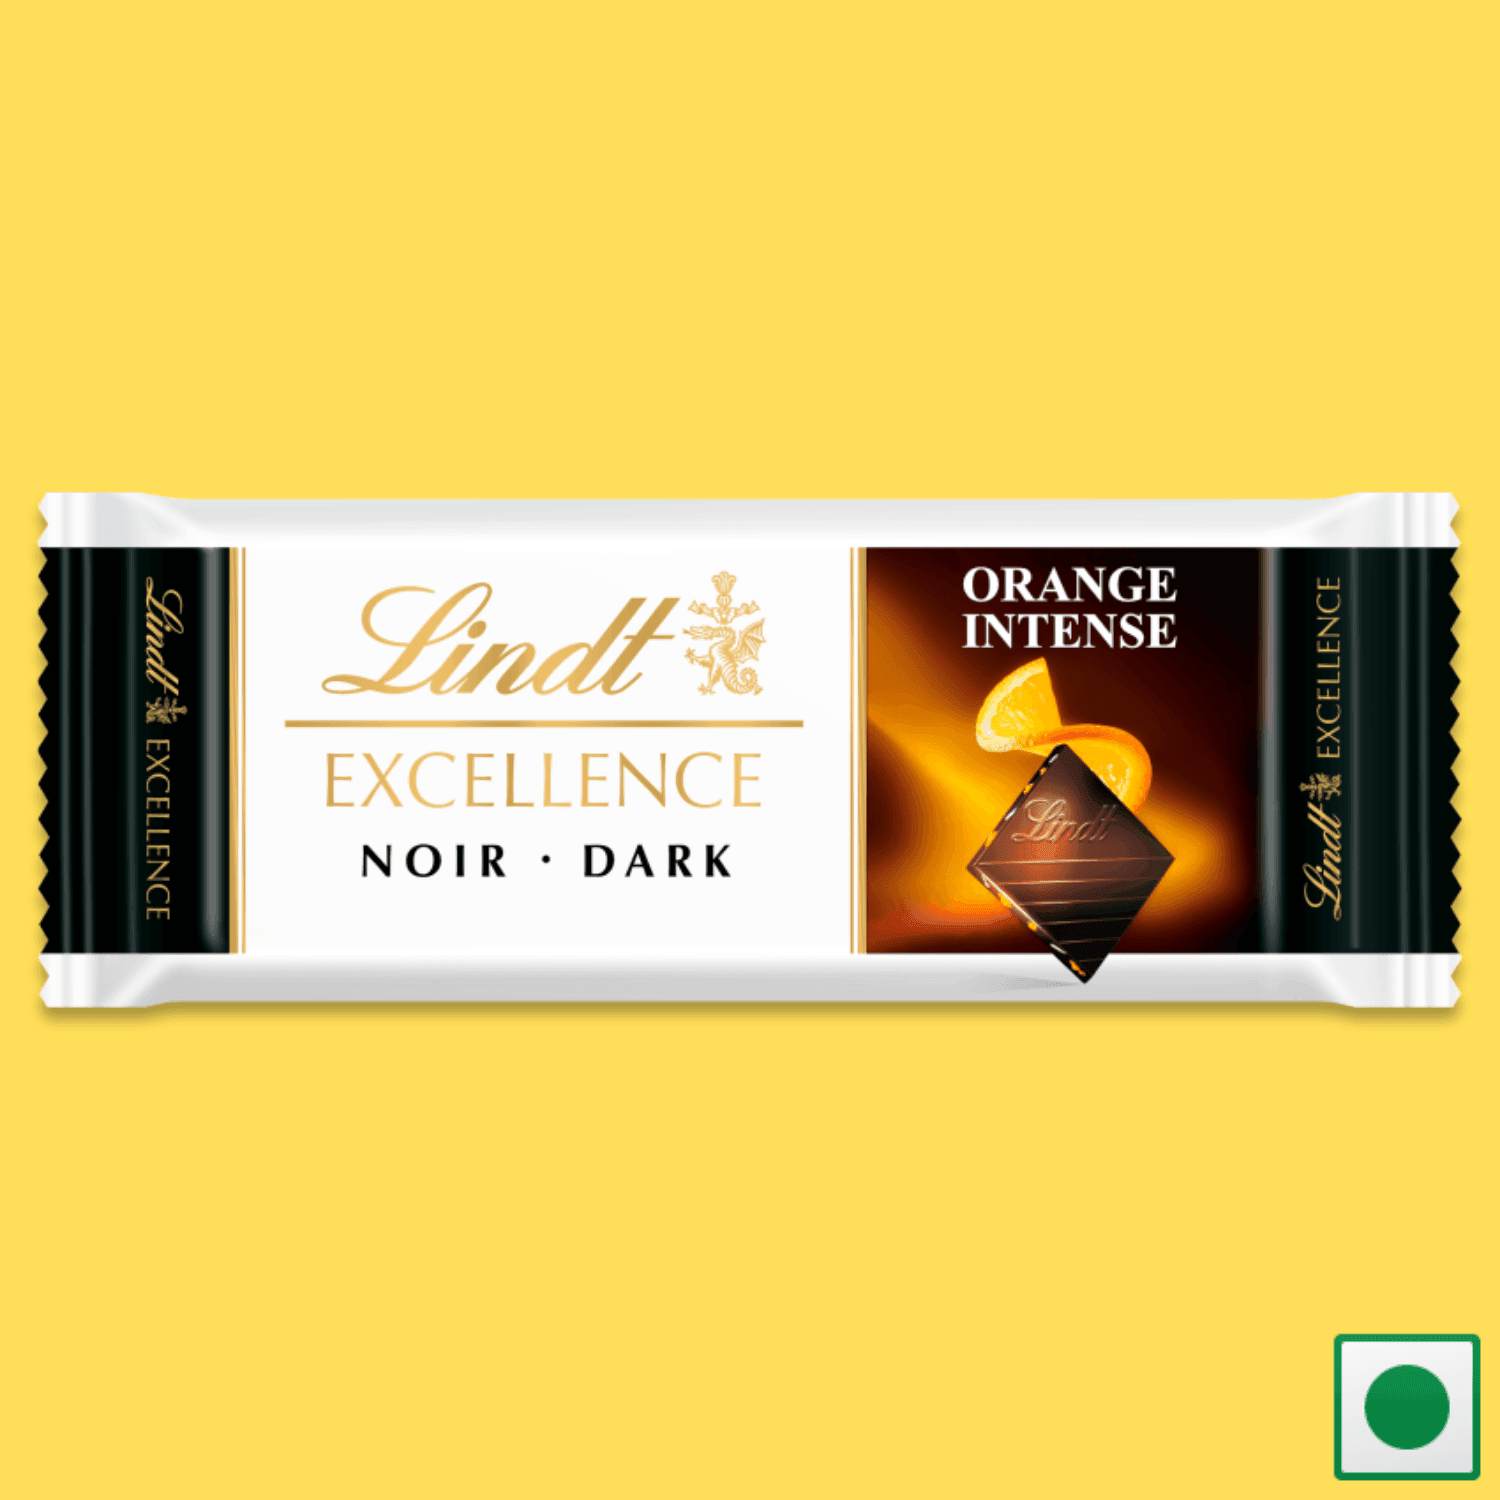 Lindt Excellence Dark Orange Intense, 35g (Imported) - Super 7 Mart